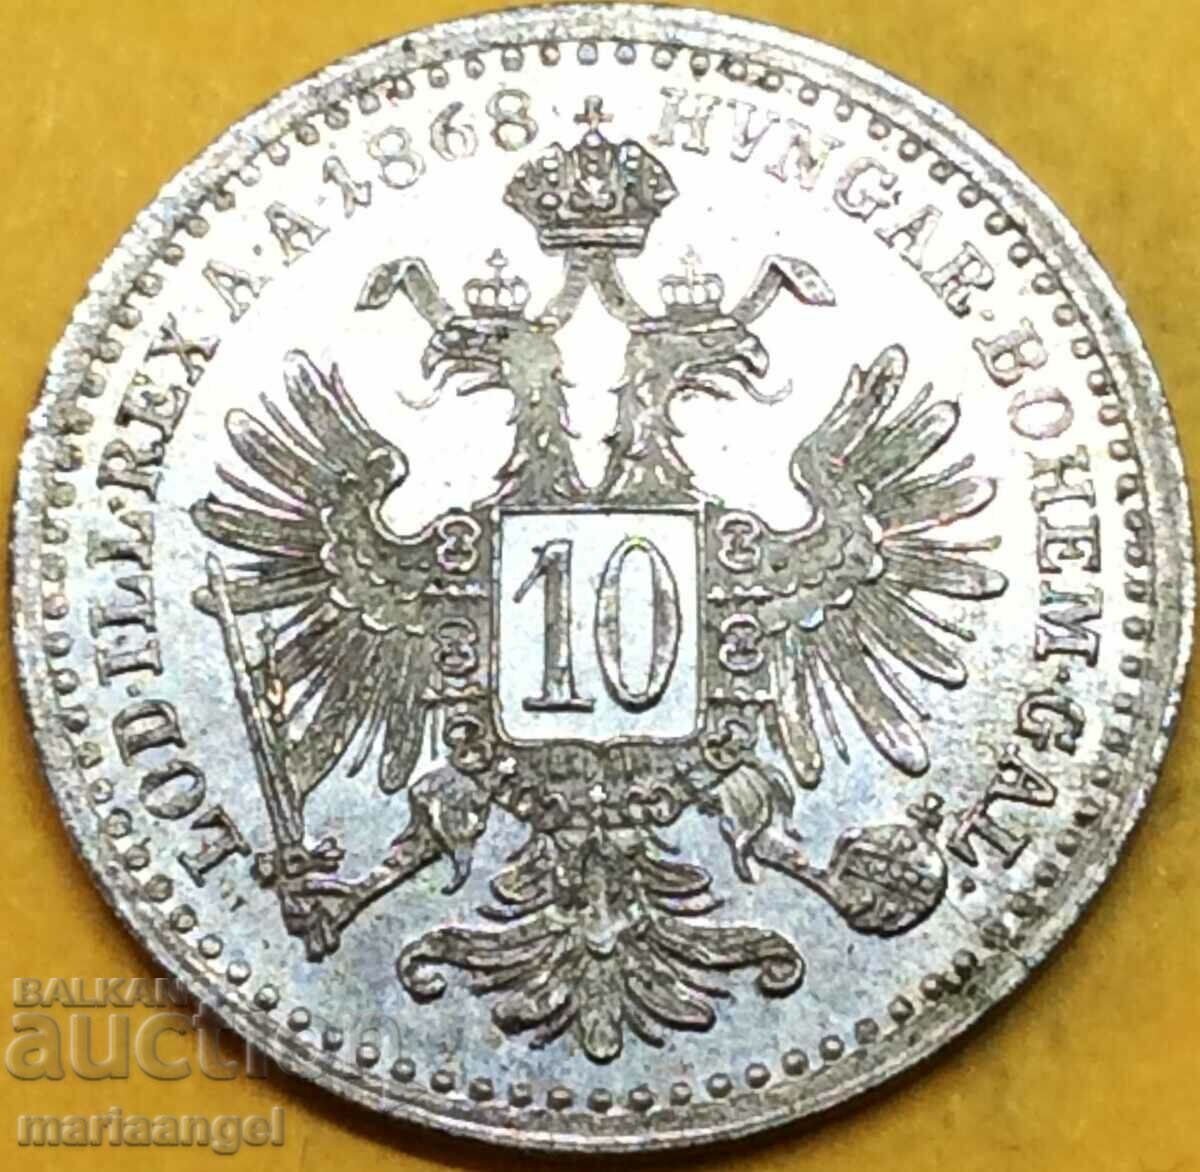 10 Kreuzer 1868 Hungary Franz Joseph Silver - quite rare